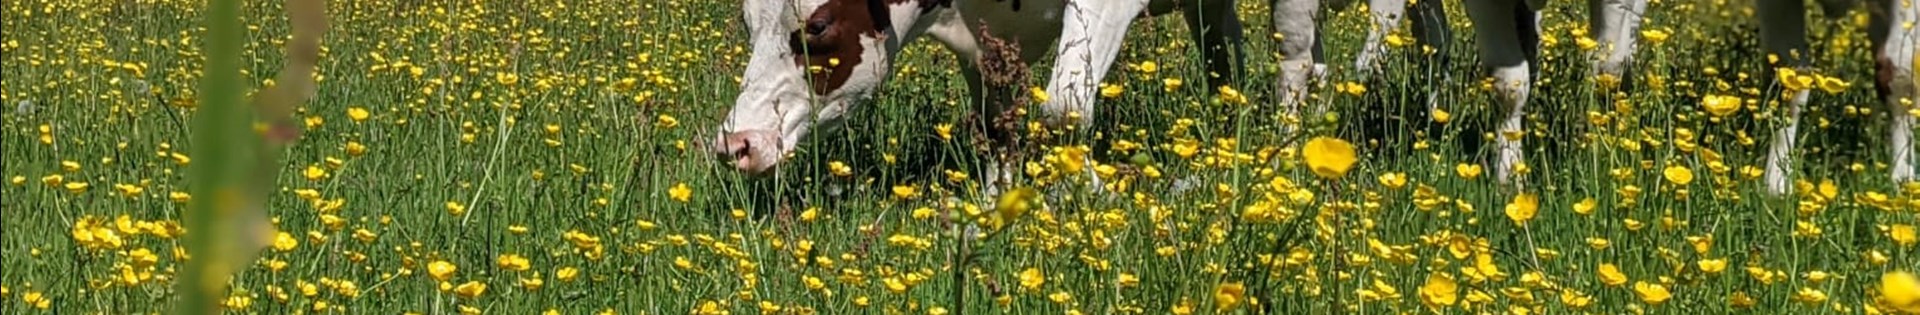 Koe In Bloemrijk Gras (1)